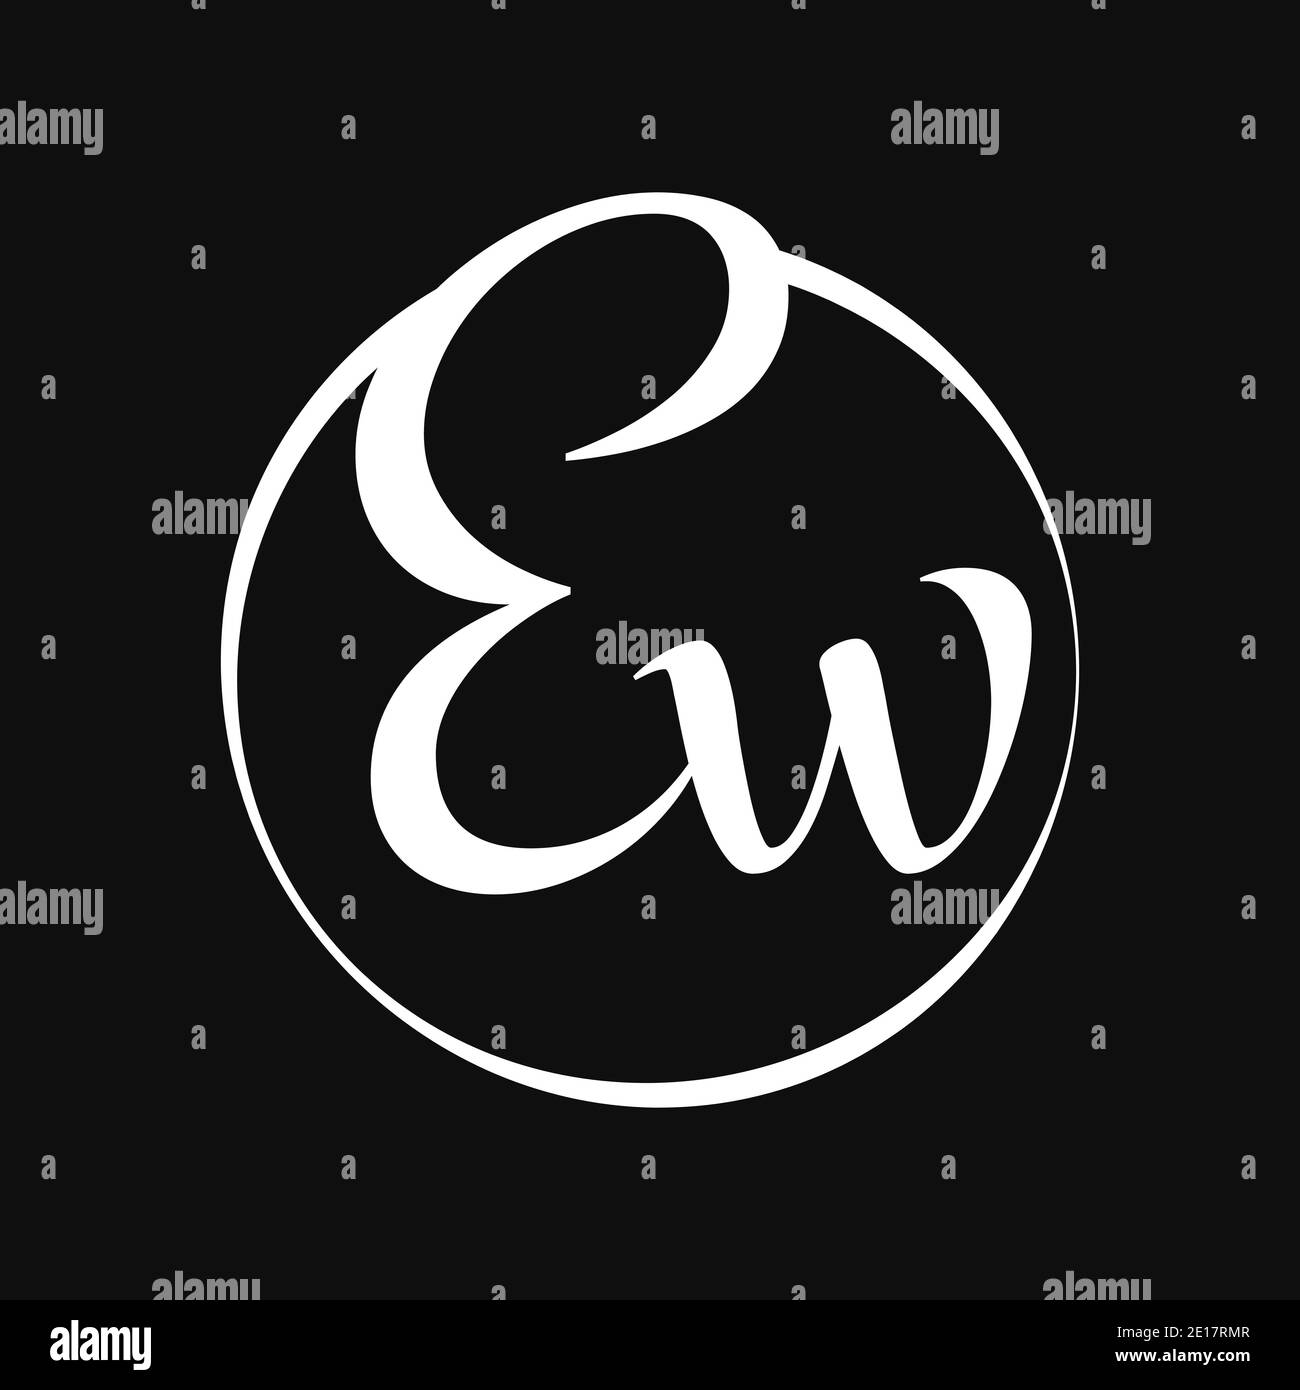 Logo de type lettre de script EW initial avec modèle vectoriel de typographie moderne. Design du logo de la lettre de script créative EW Illustration de Vecteur